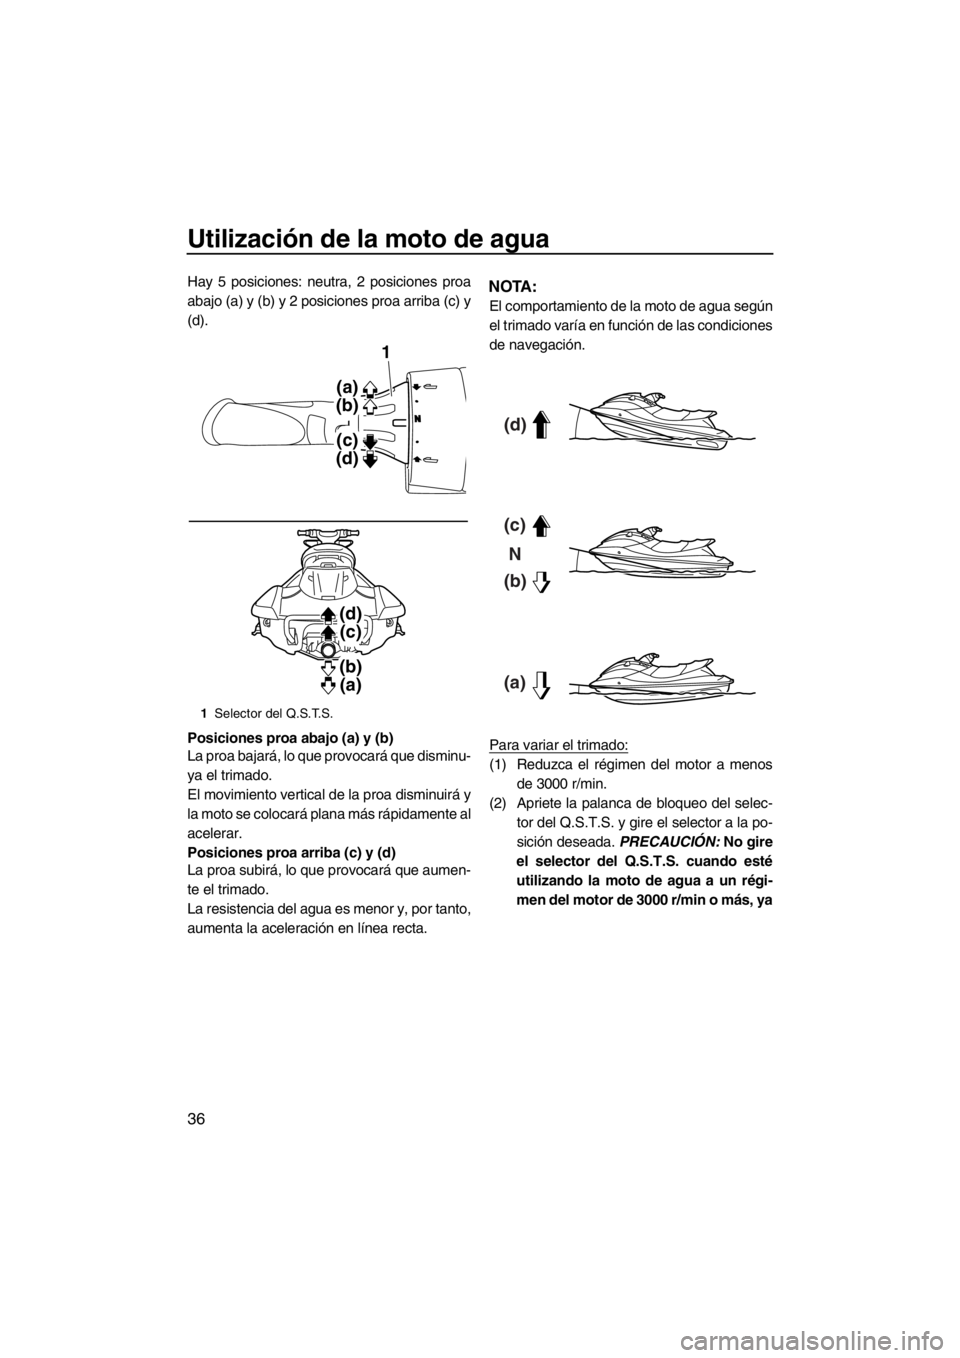 YAMAHA FX HO 2012  Manuale de Empleo (in Spanish) Utilización de la moto de agua
36
Hay 5 posiciones: neutra, 2 posiciones proa
abajo (a) y (b) y 2 posiciones proa arriba (c) y
(d).
Posiciones proa abajo (a) y (b)
La proa bajará, lo que provocará 